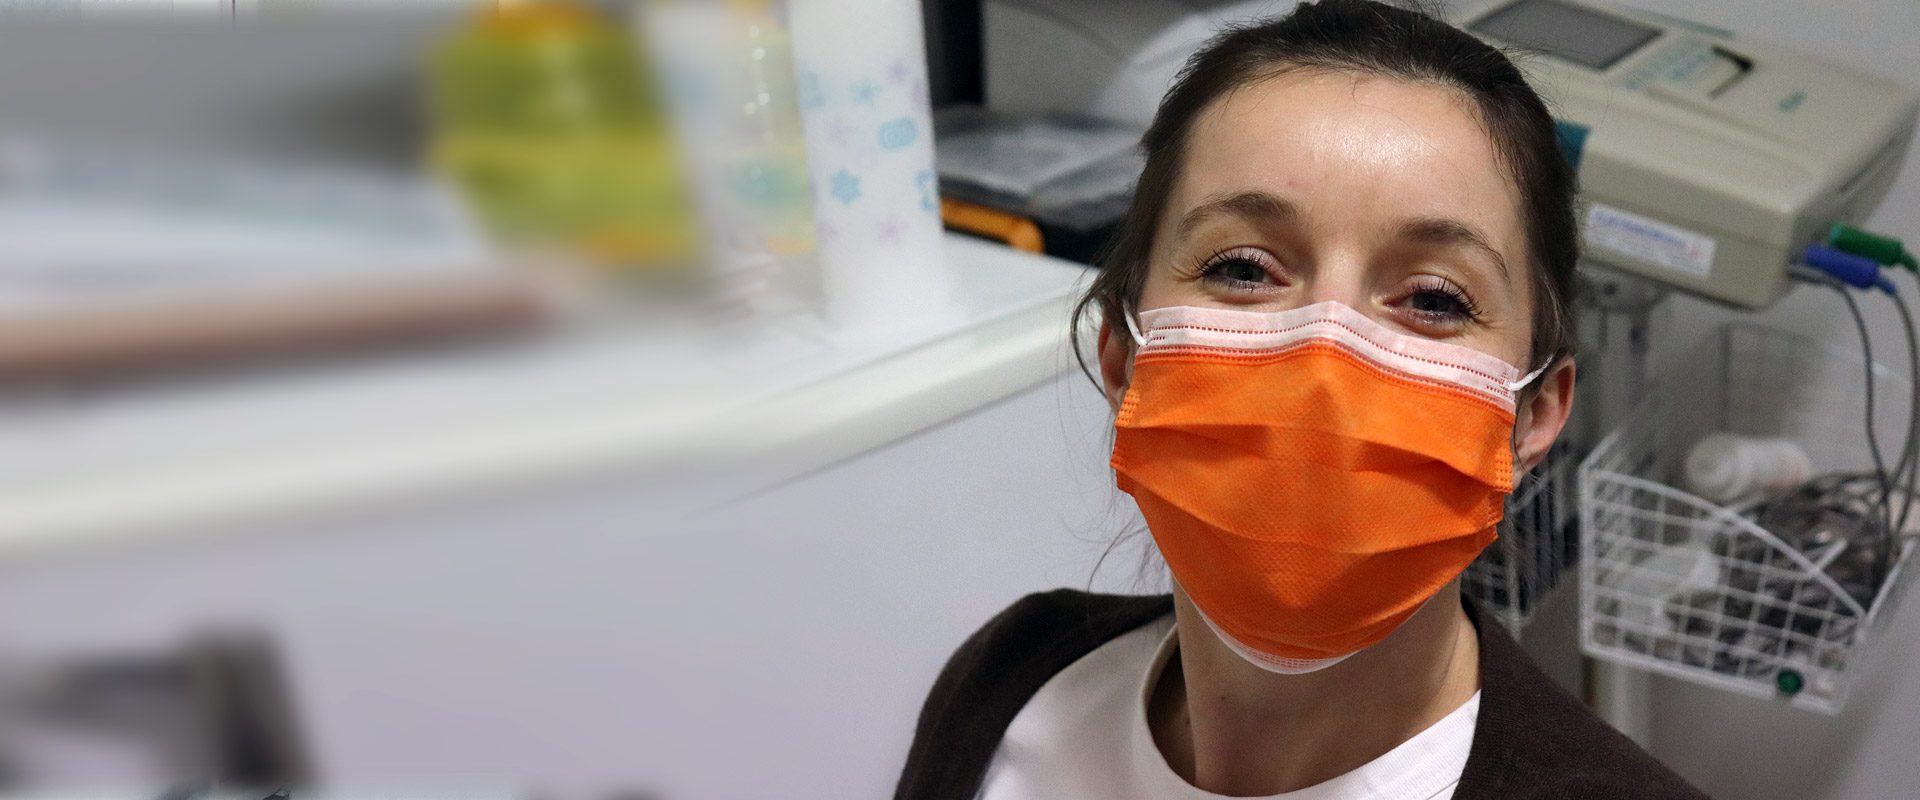 Por aumento de virus respiratorios: Empezó a regir alerta sanitaria declarada por Minsal